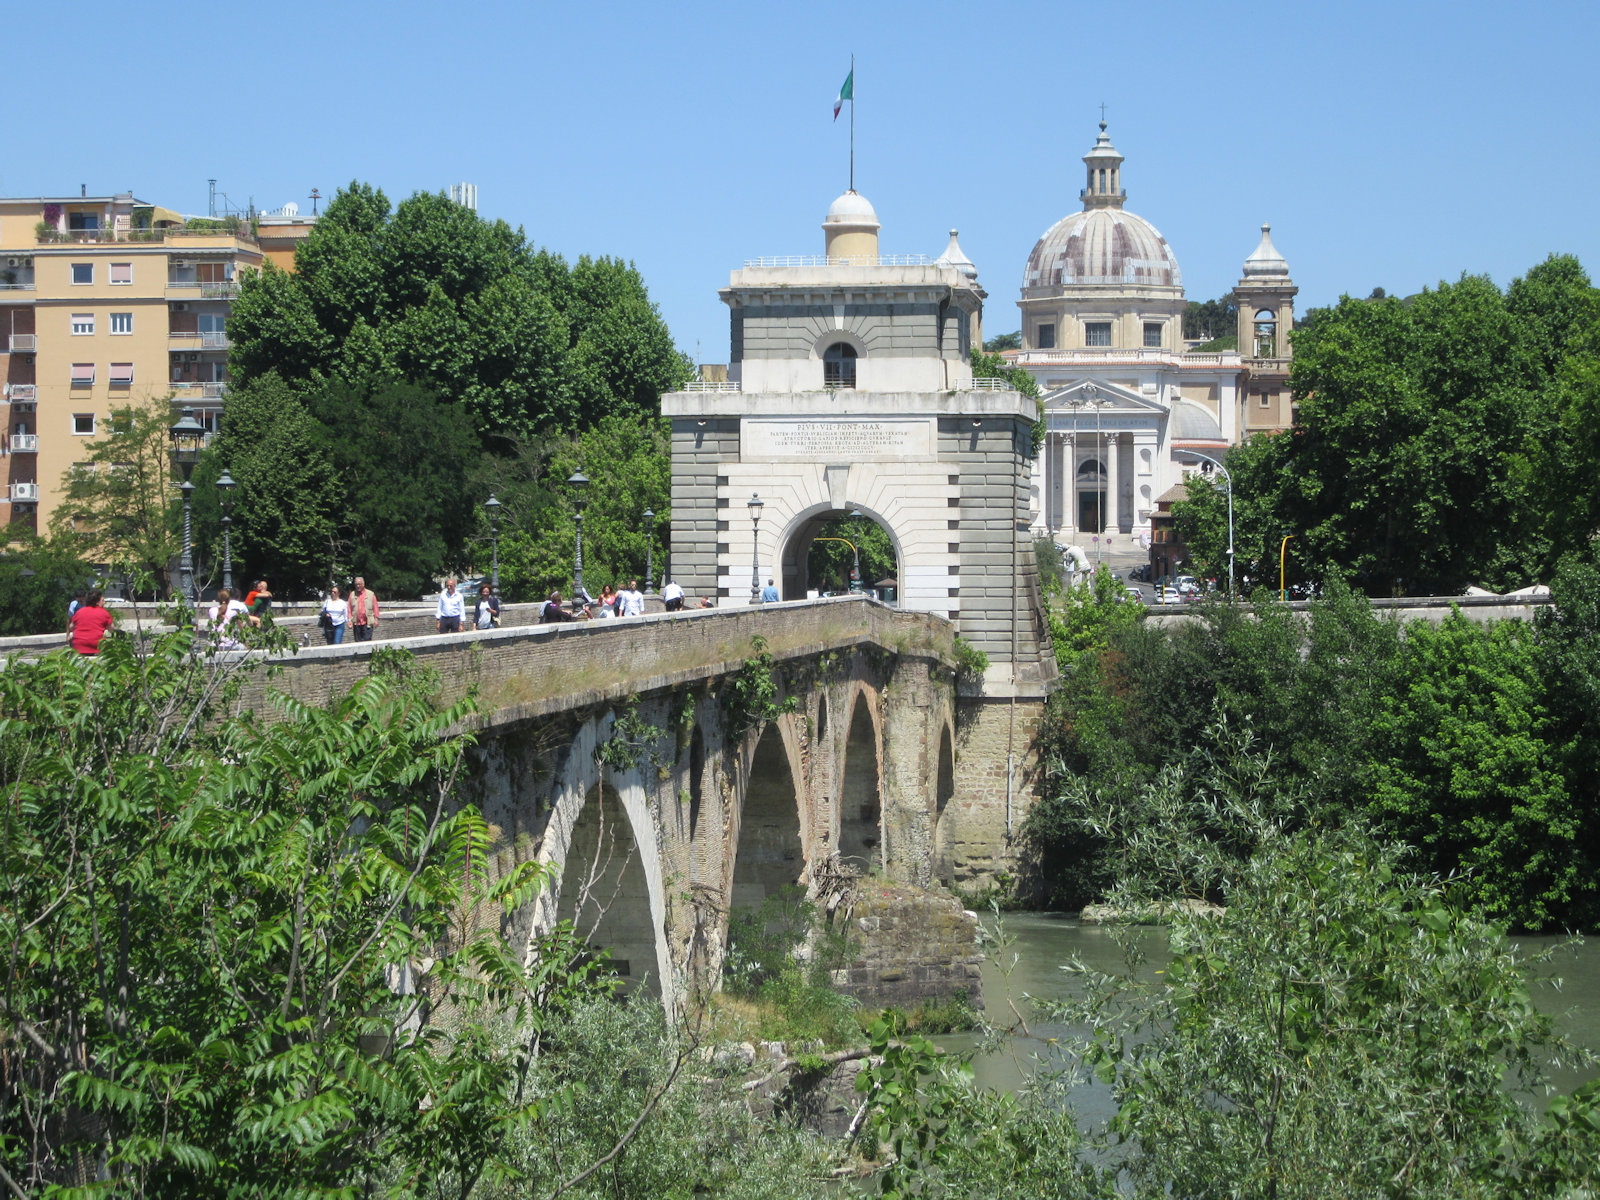 Milvischen Brücke mit vier erhaltenen Bögen aus dem Bau von 109 v. Chr., Brückentor von 1805 und der 1933 geweihten Kirche della Gran Madre di Dio